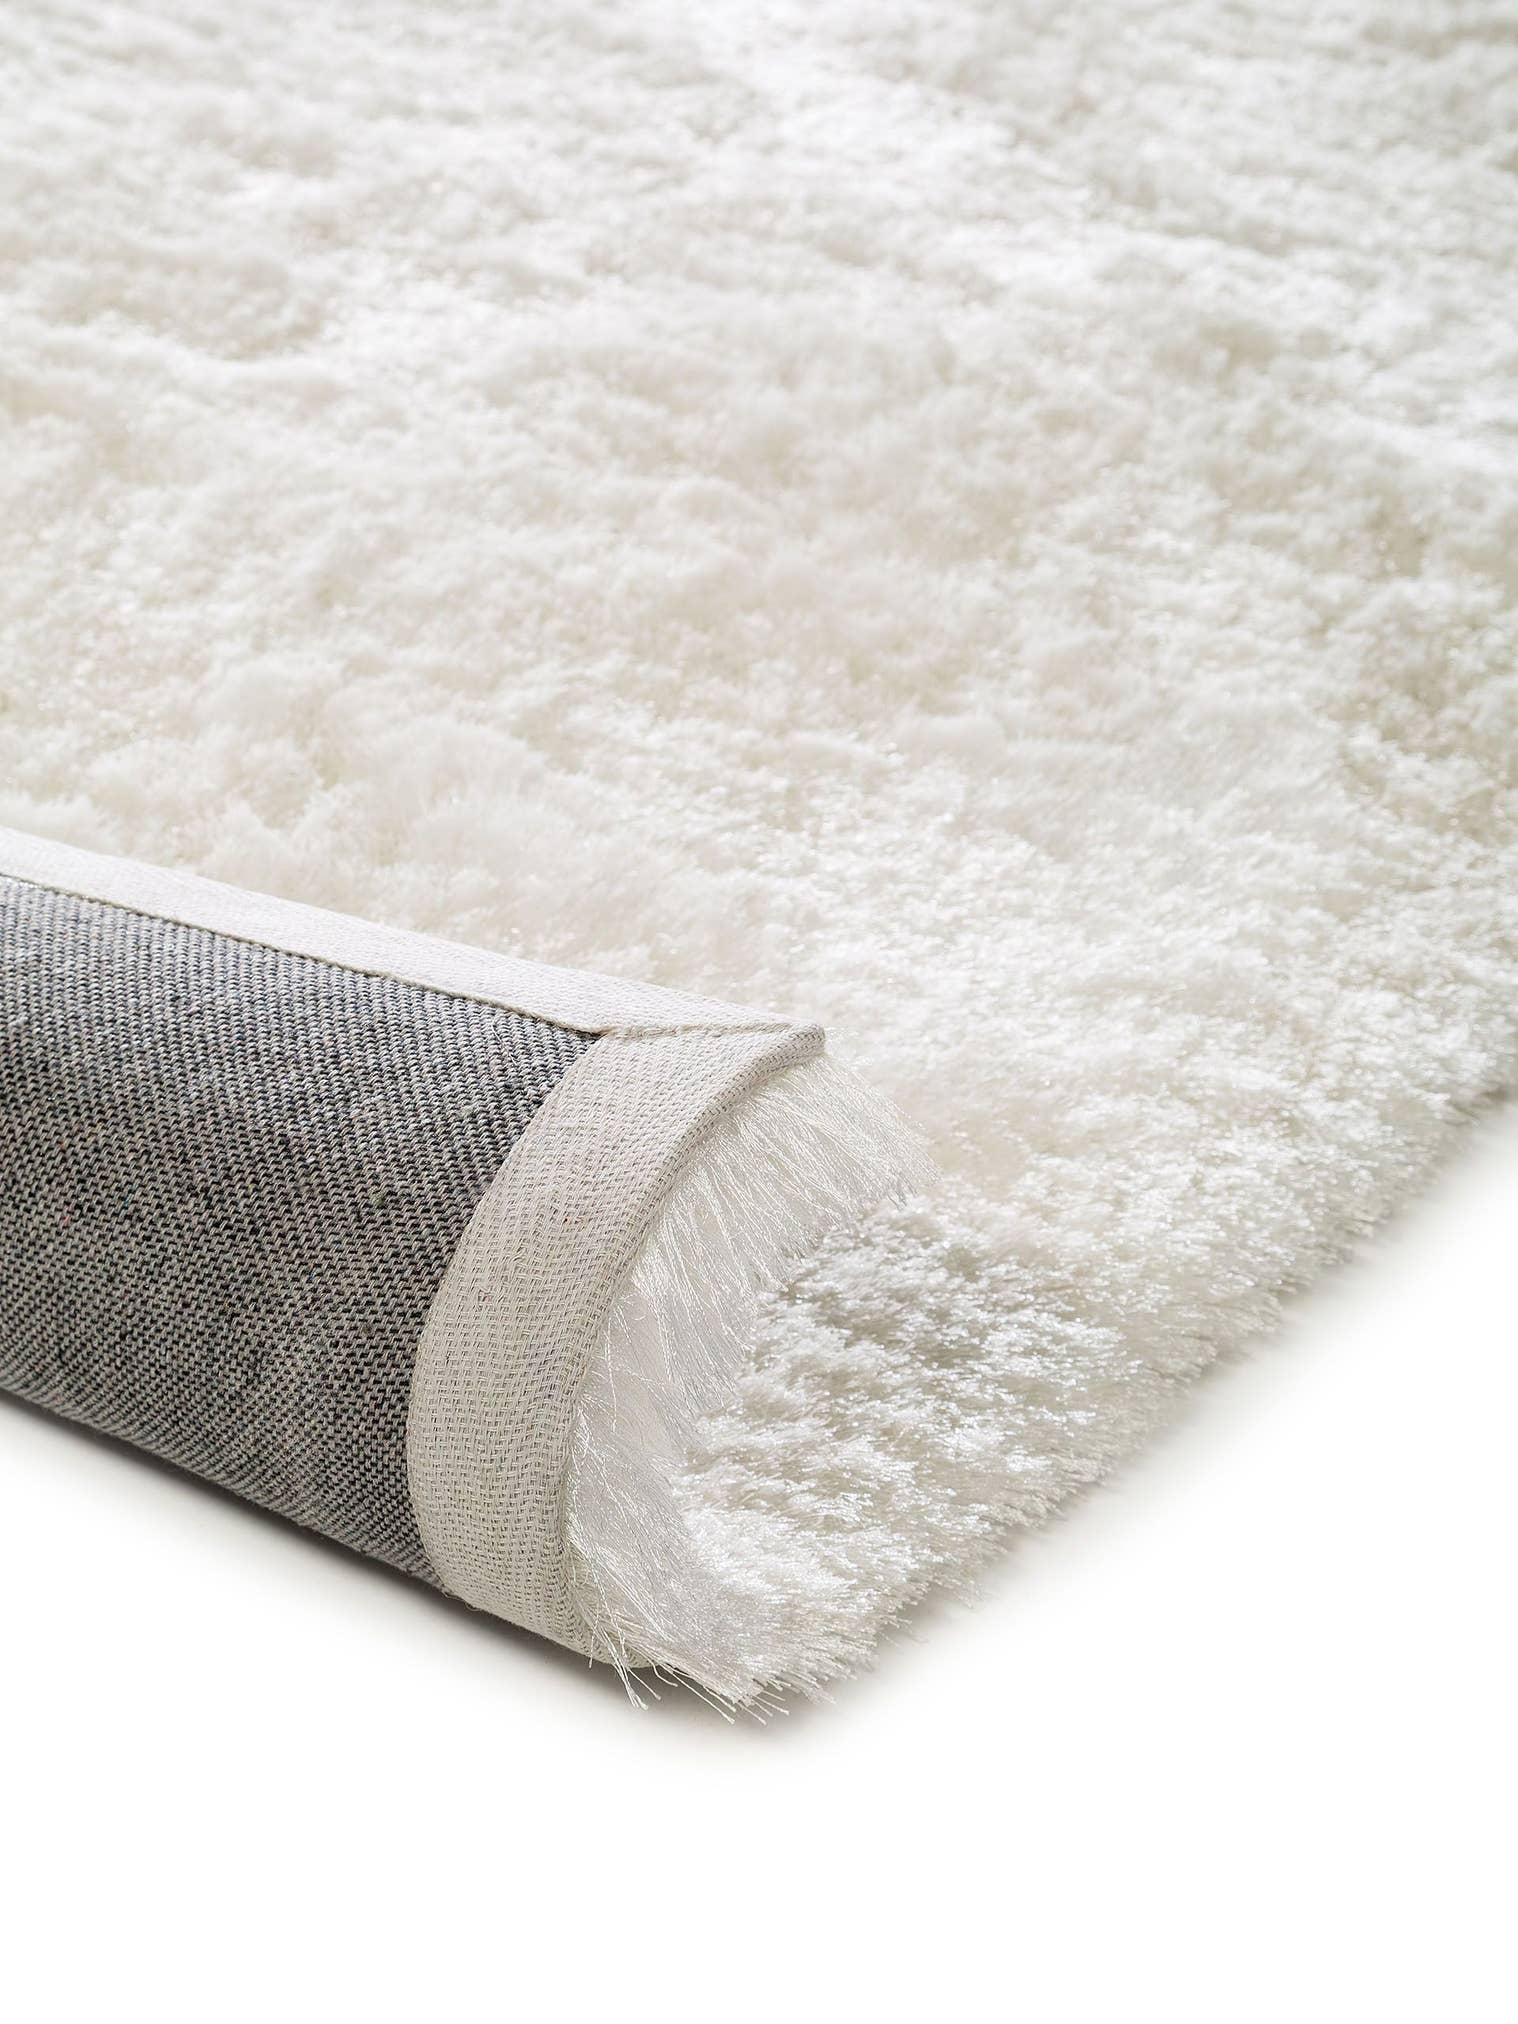 Tapijt van 100% Polyester in Wit met een 31 - 40 mm hoge pool van benuta Nest